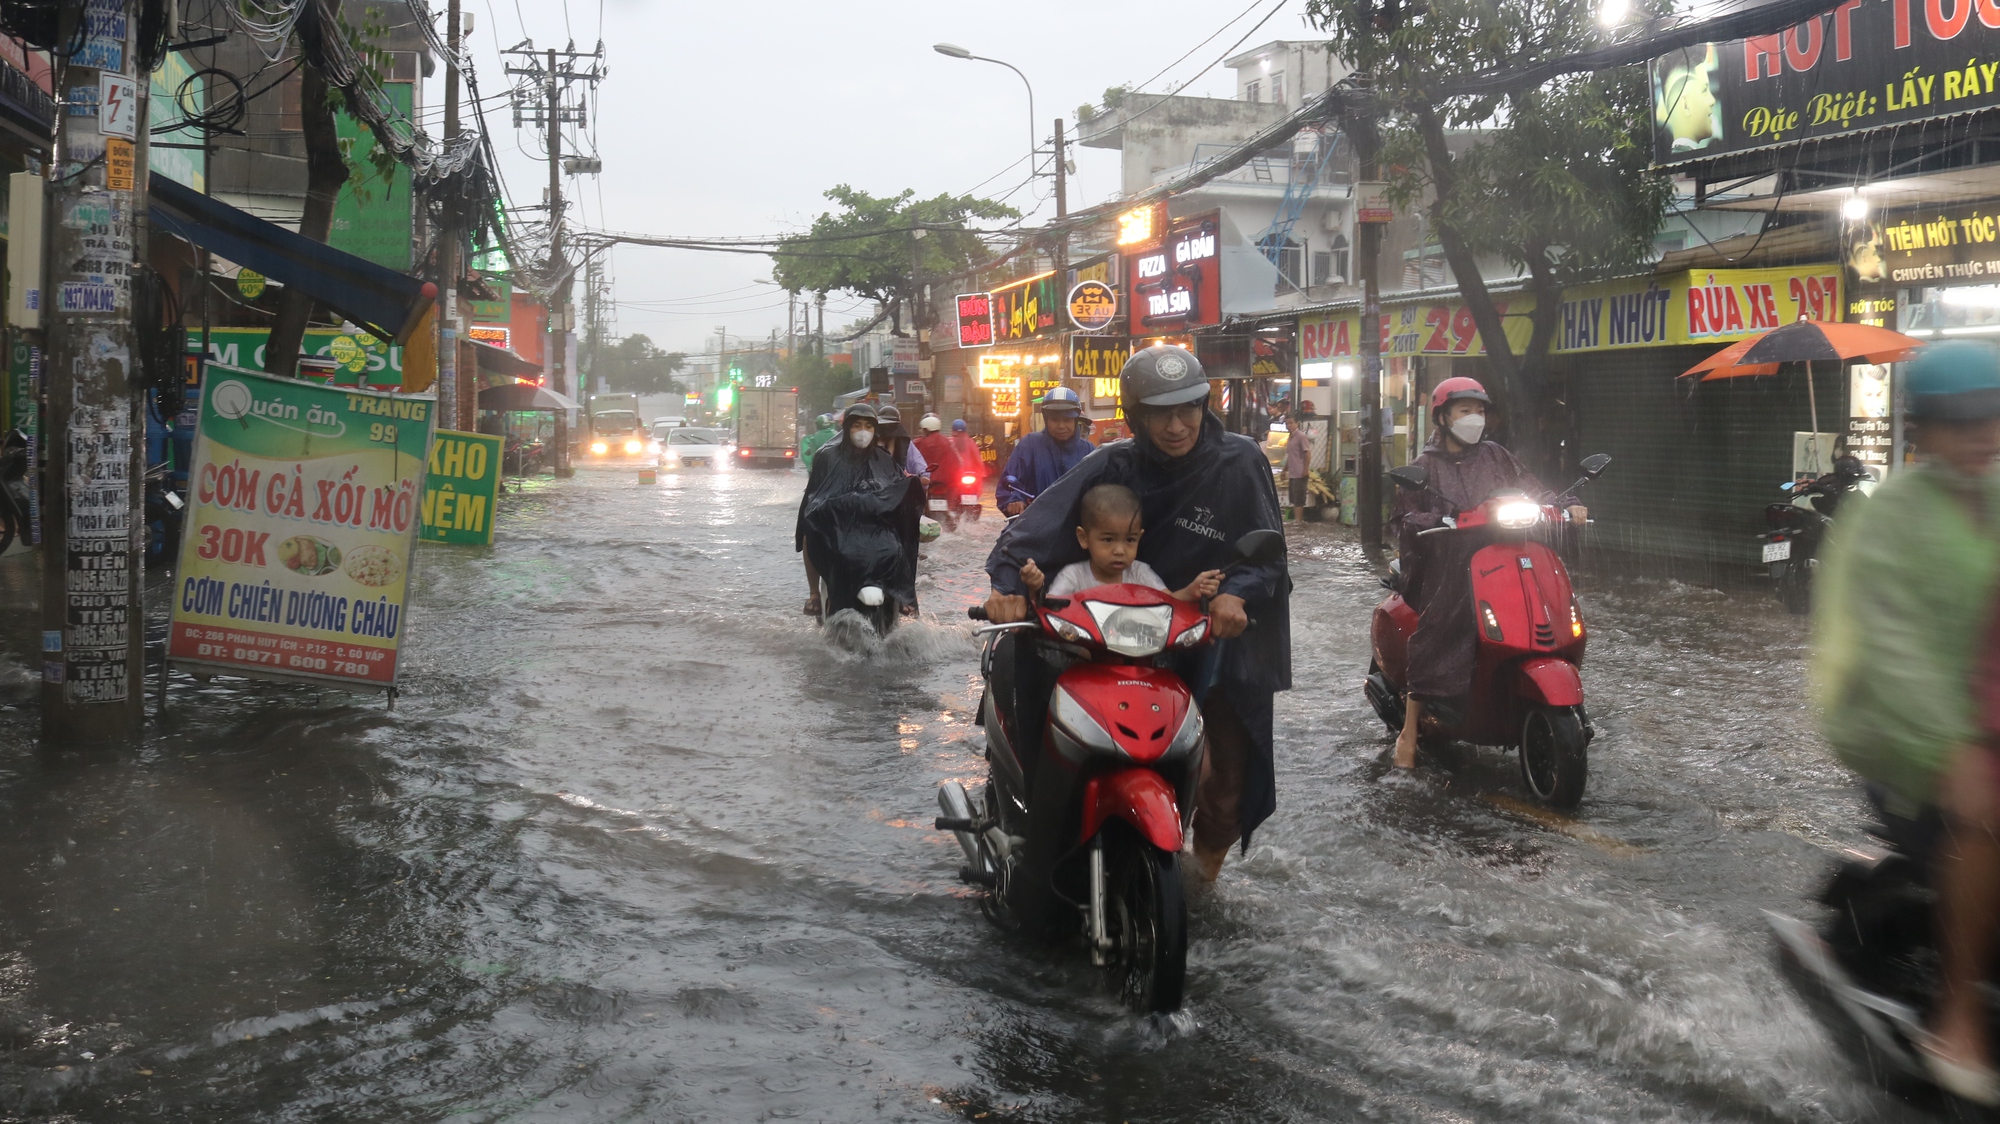 CLIP: TP HCM mưa tối trời, người dân xé nước trên đường - Ảnh 6.